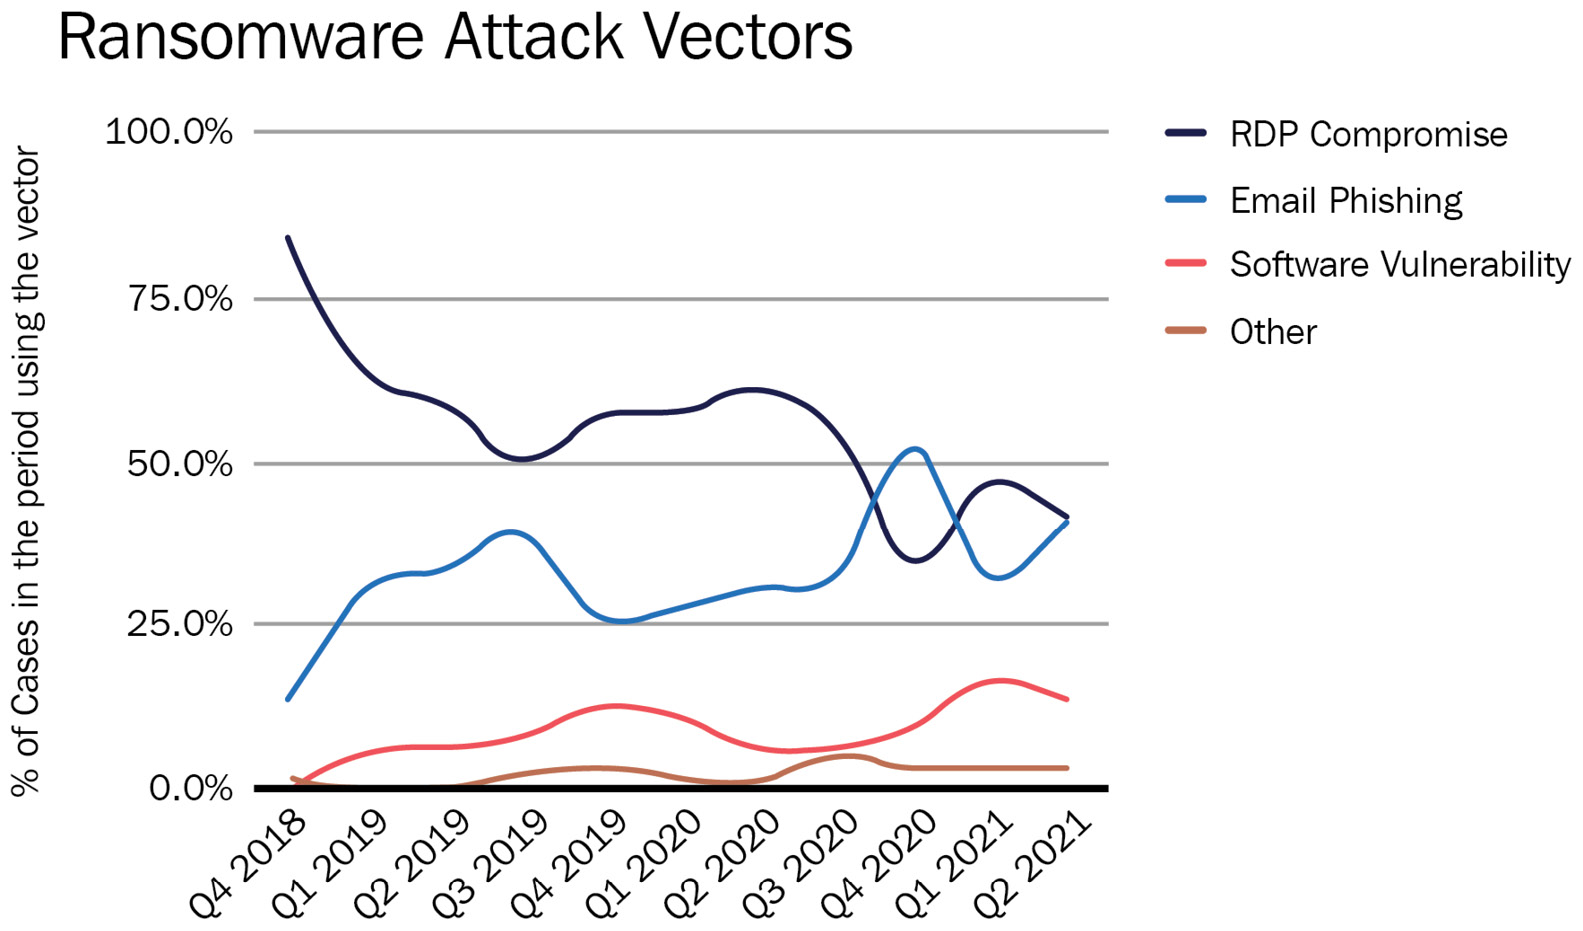 Figure 2.1 – The most common ransomware attack vectors according to Coveware
